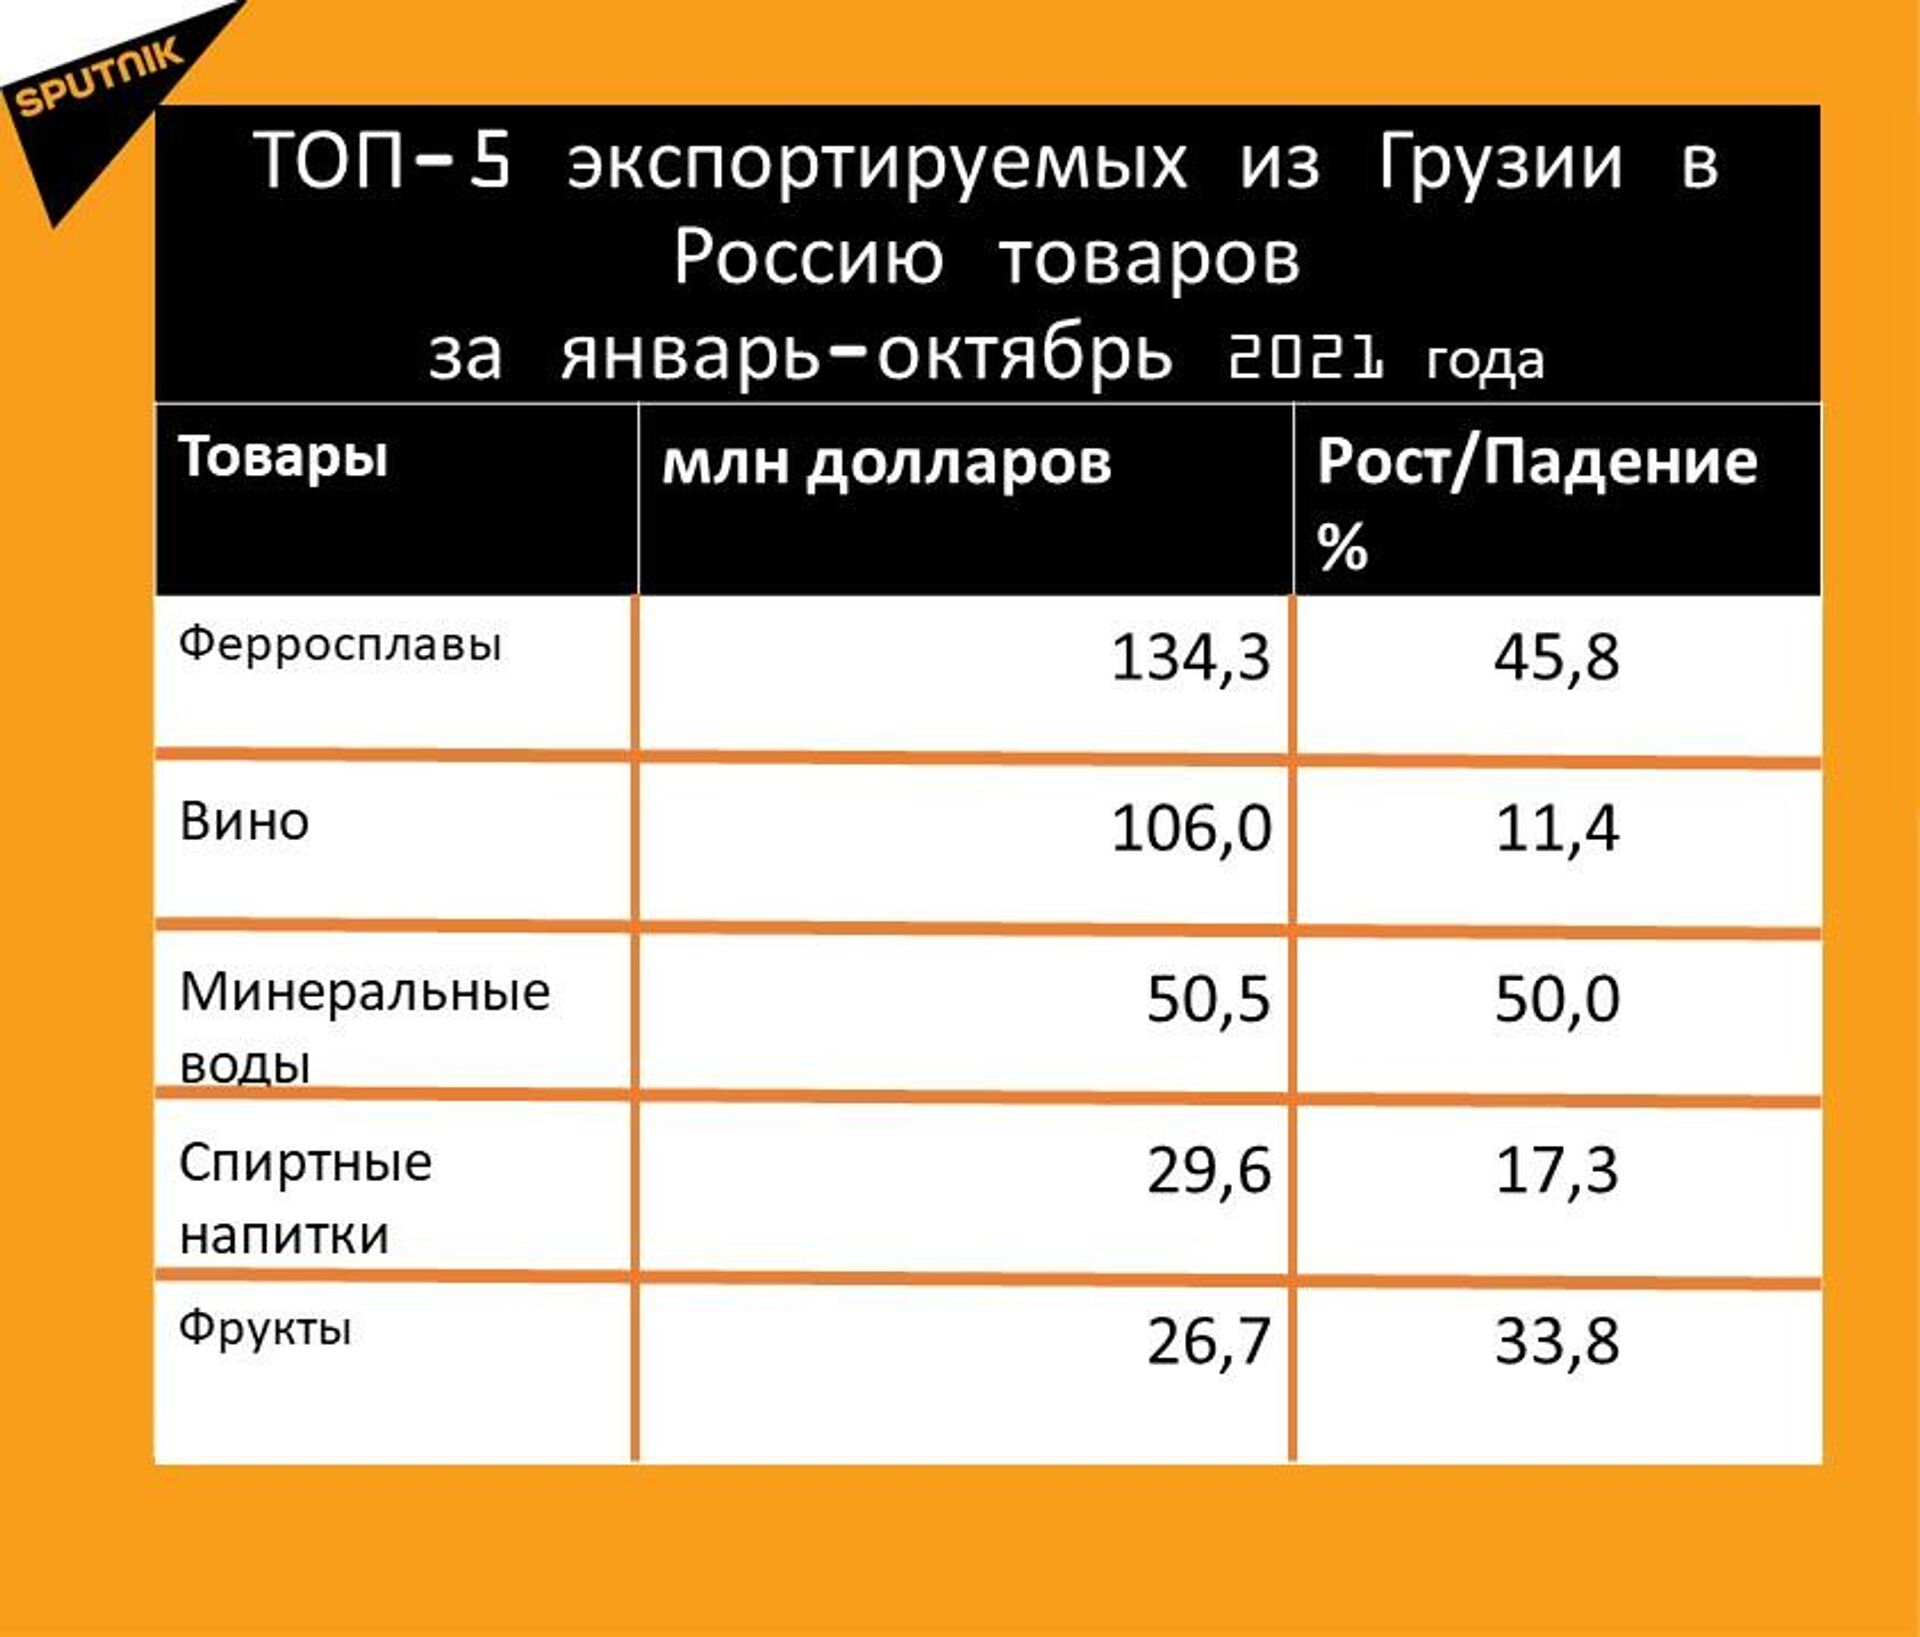 Статистика внешнеторгового оборота Грузии и России за январь-октябрь 2021 года, экспорт - Sputnik Грузия, 1920, 24.11.2021